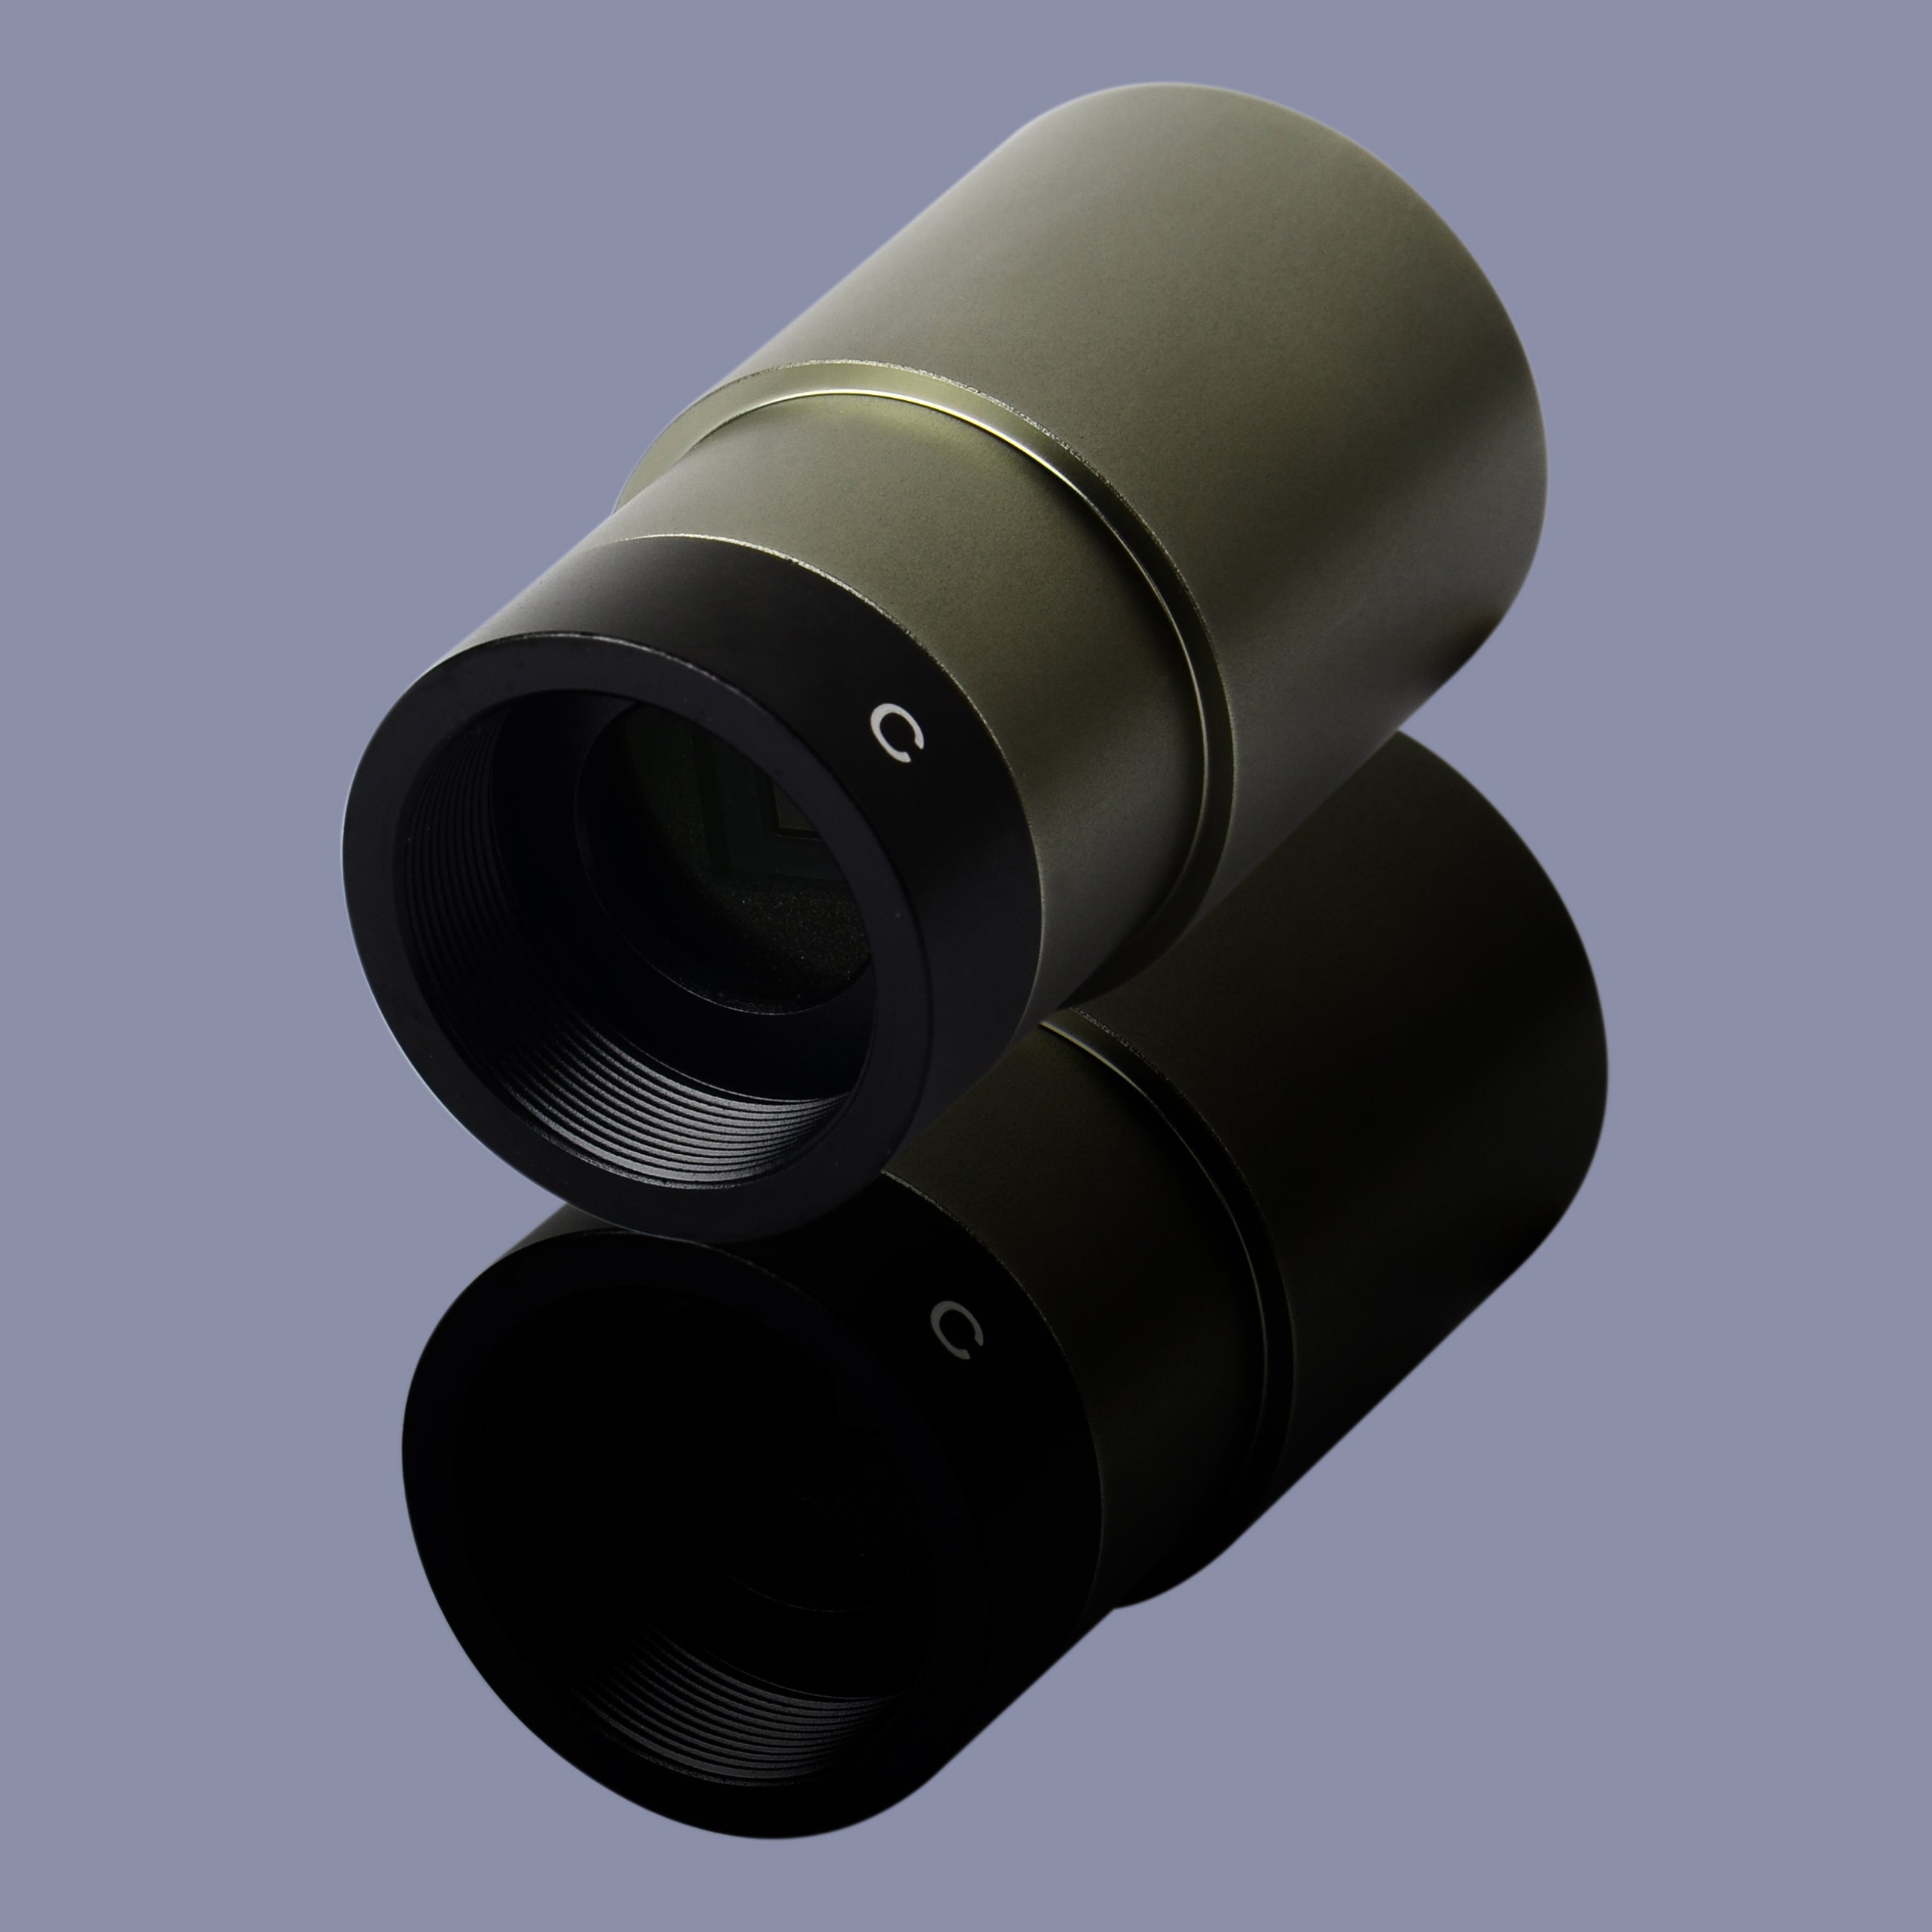 Sensor CMOS de la serie BStar-de Full HD CMOS 1.25 "Cámara de color de astrofotografía guía